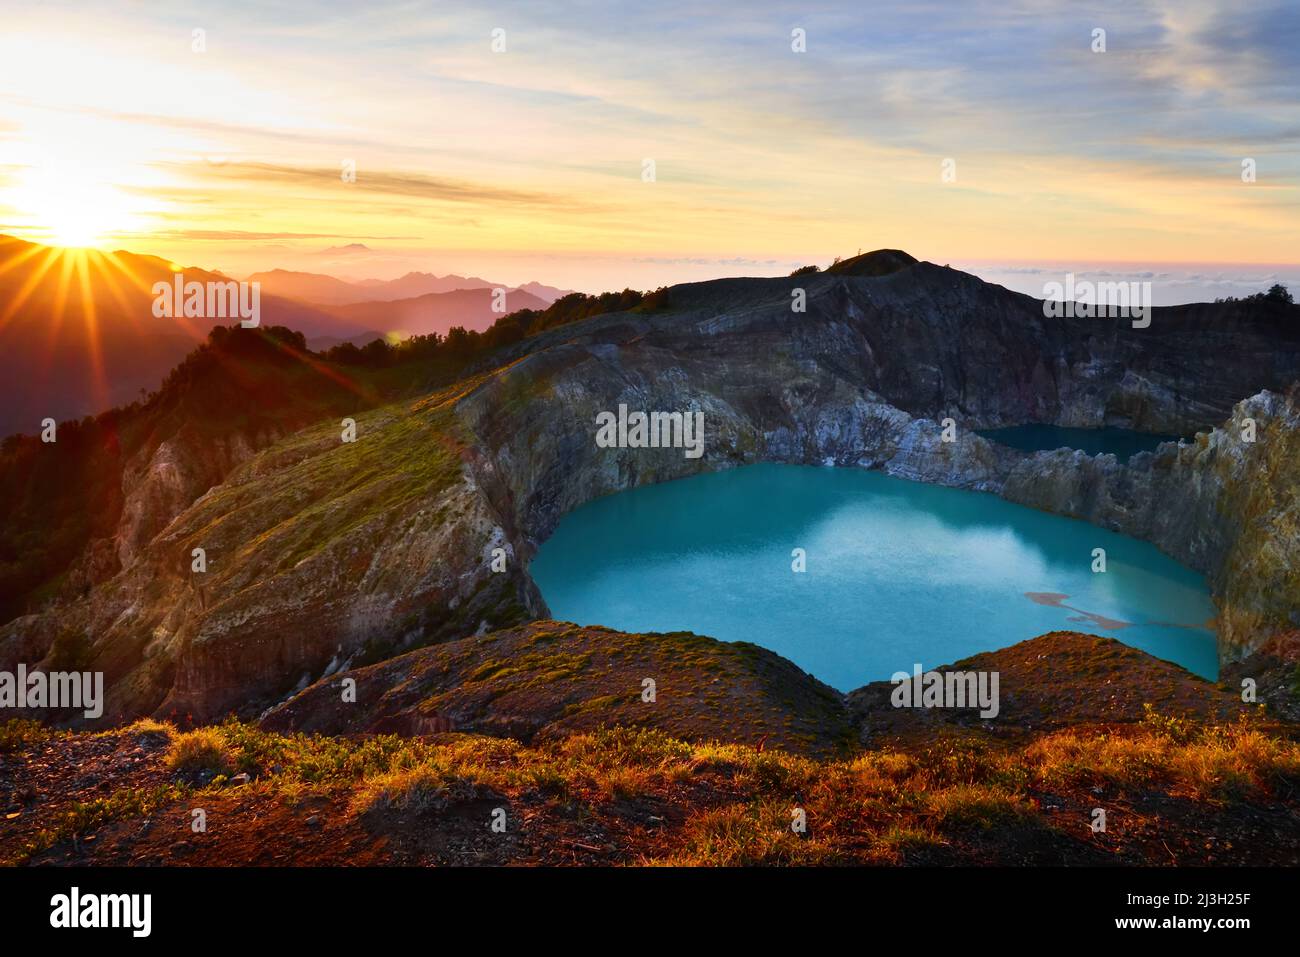 Sonnenaufgang und Krater-See am Vulkan Kelimutu. Ende Regency, East Nusa Tenggara, Flores, Indonesien, Asien. Reisefoto. Stockfoto